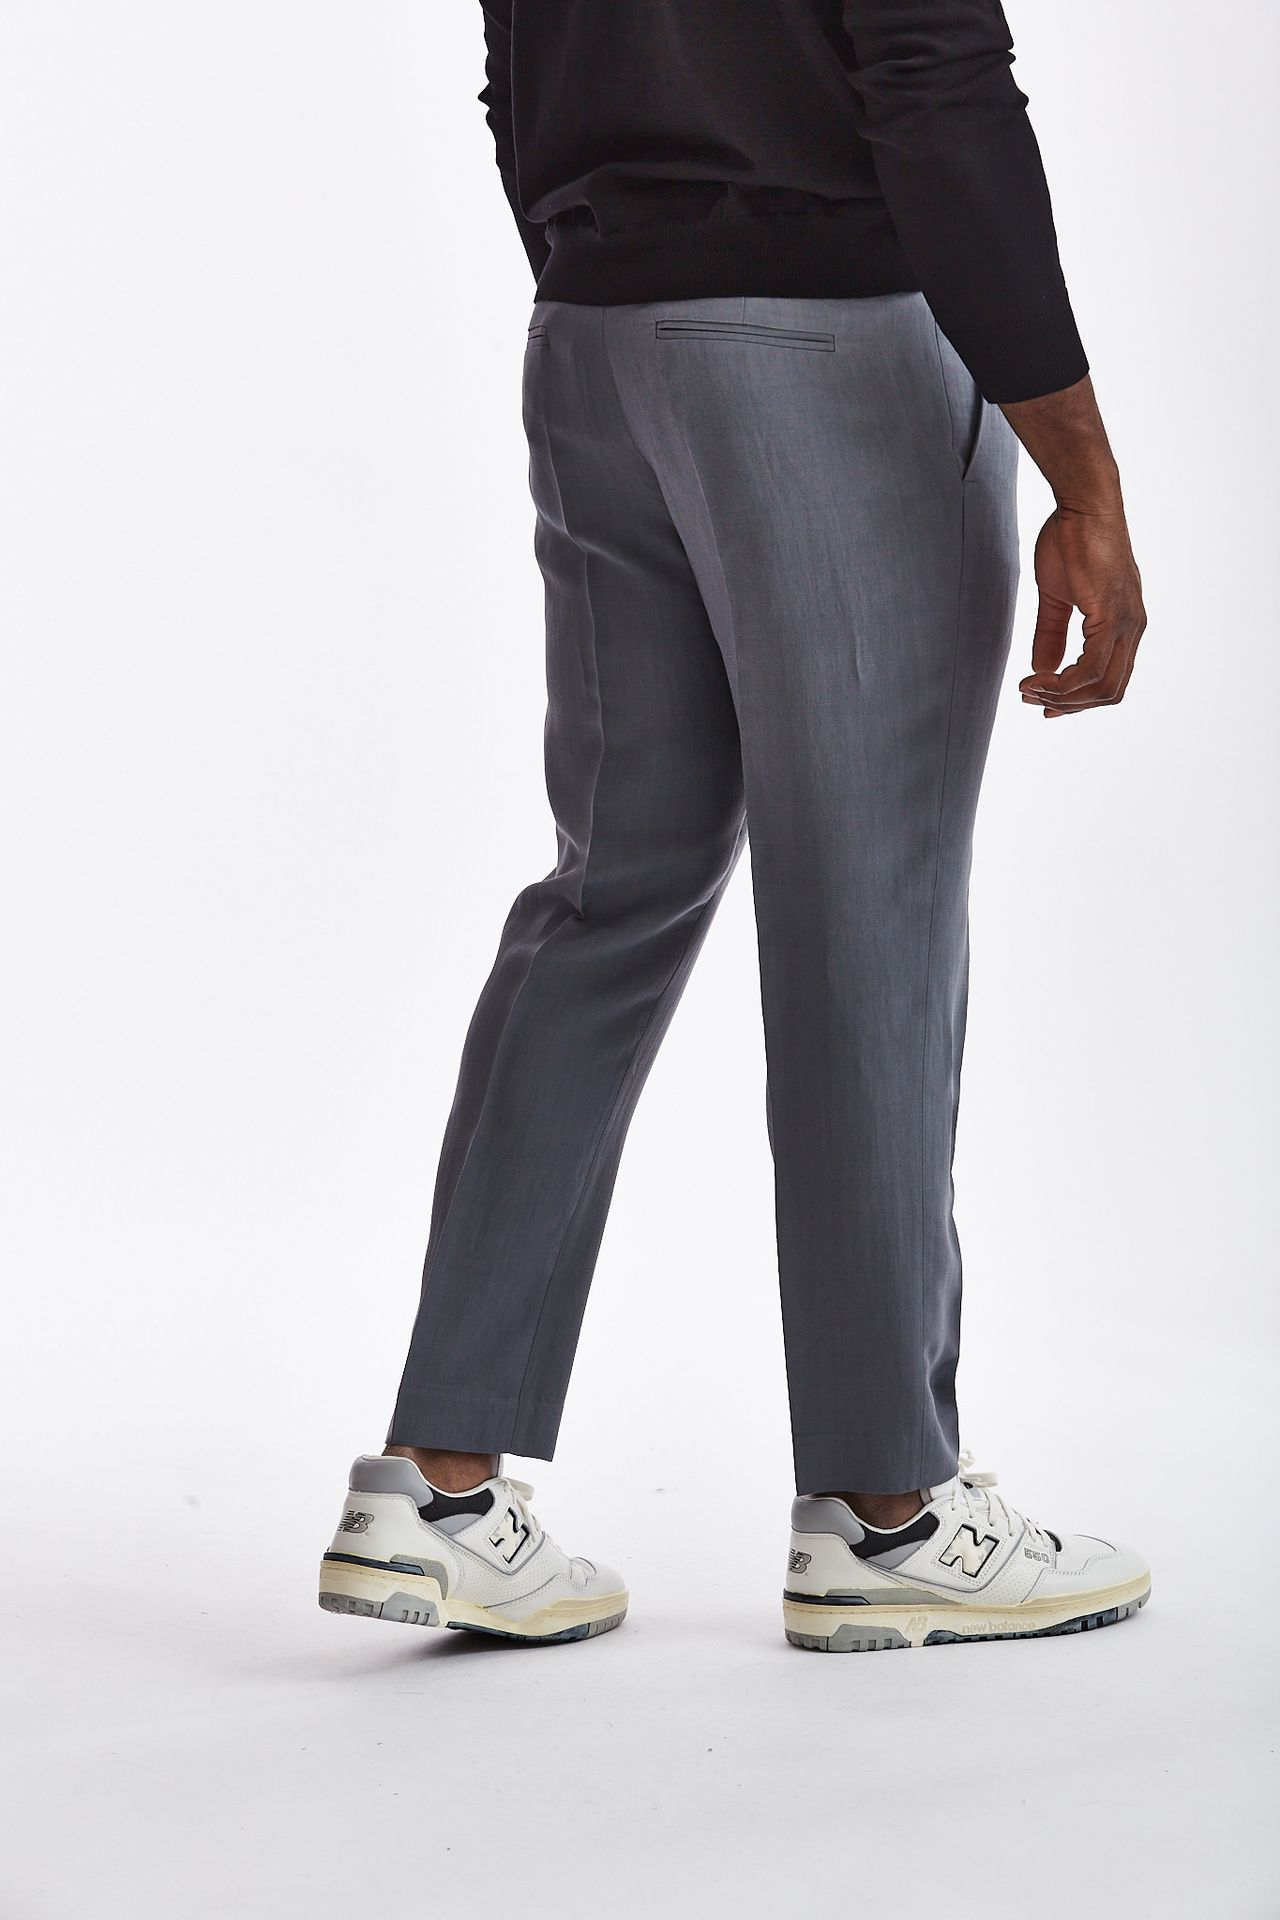 Pantalone in lino viscosa grigio